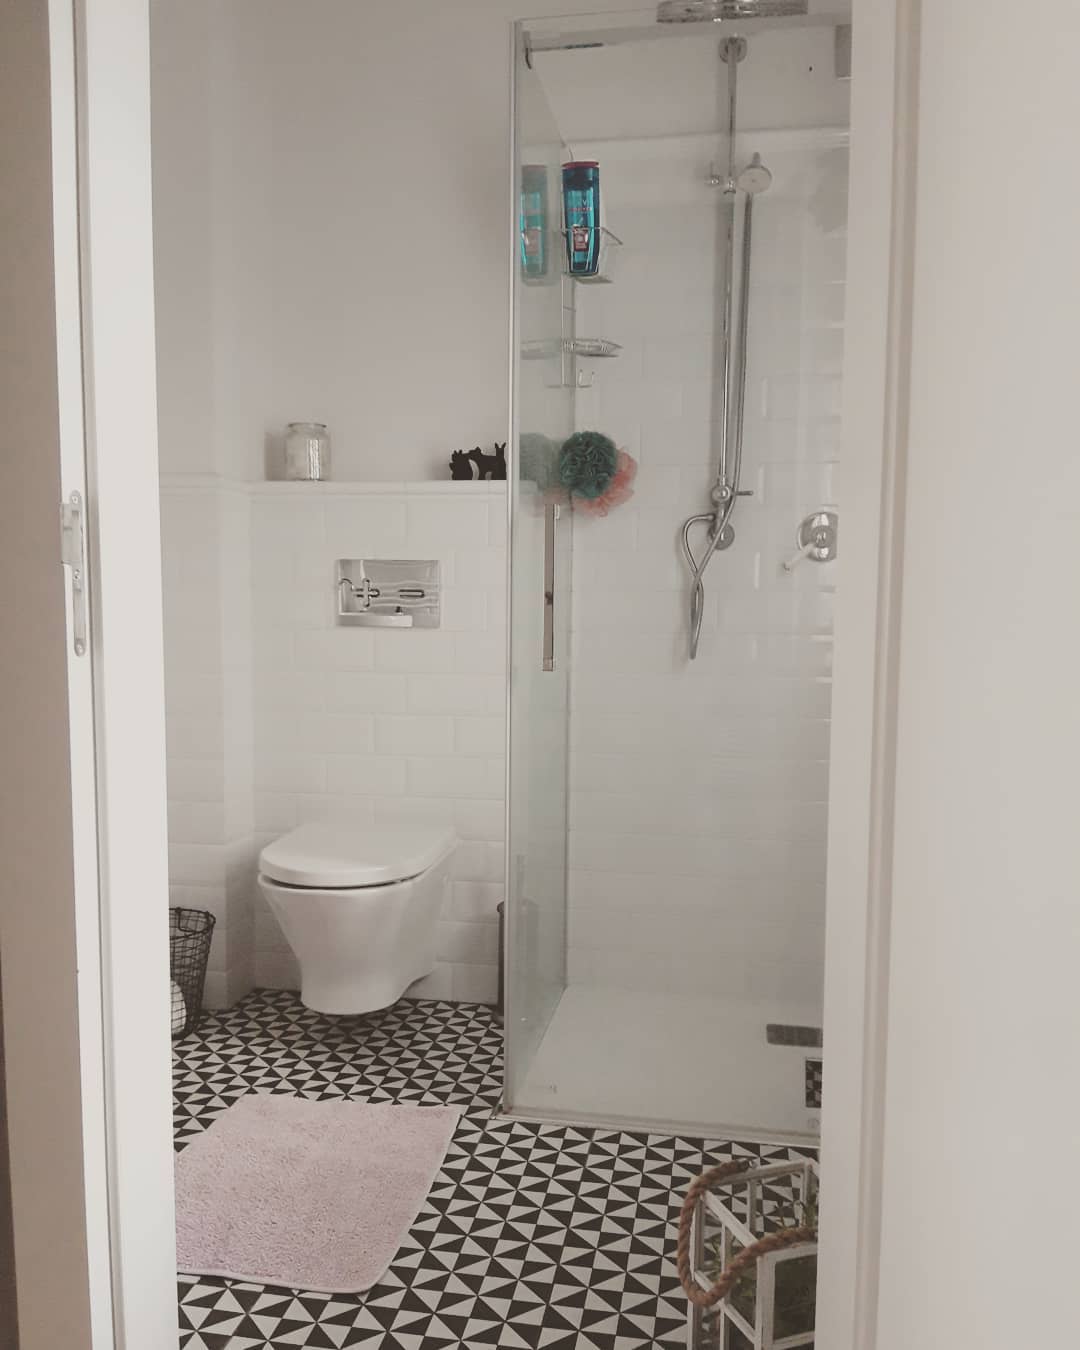 Izgled kombinirane kupaonice: kako zona prostora za istodobnu upotrebu dvoje stanovnika